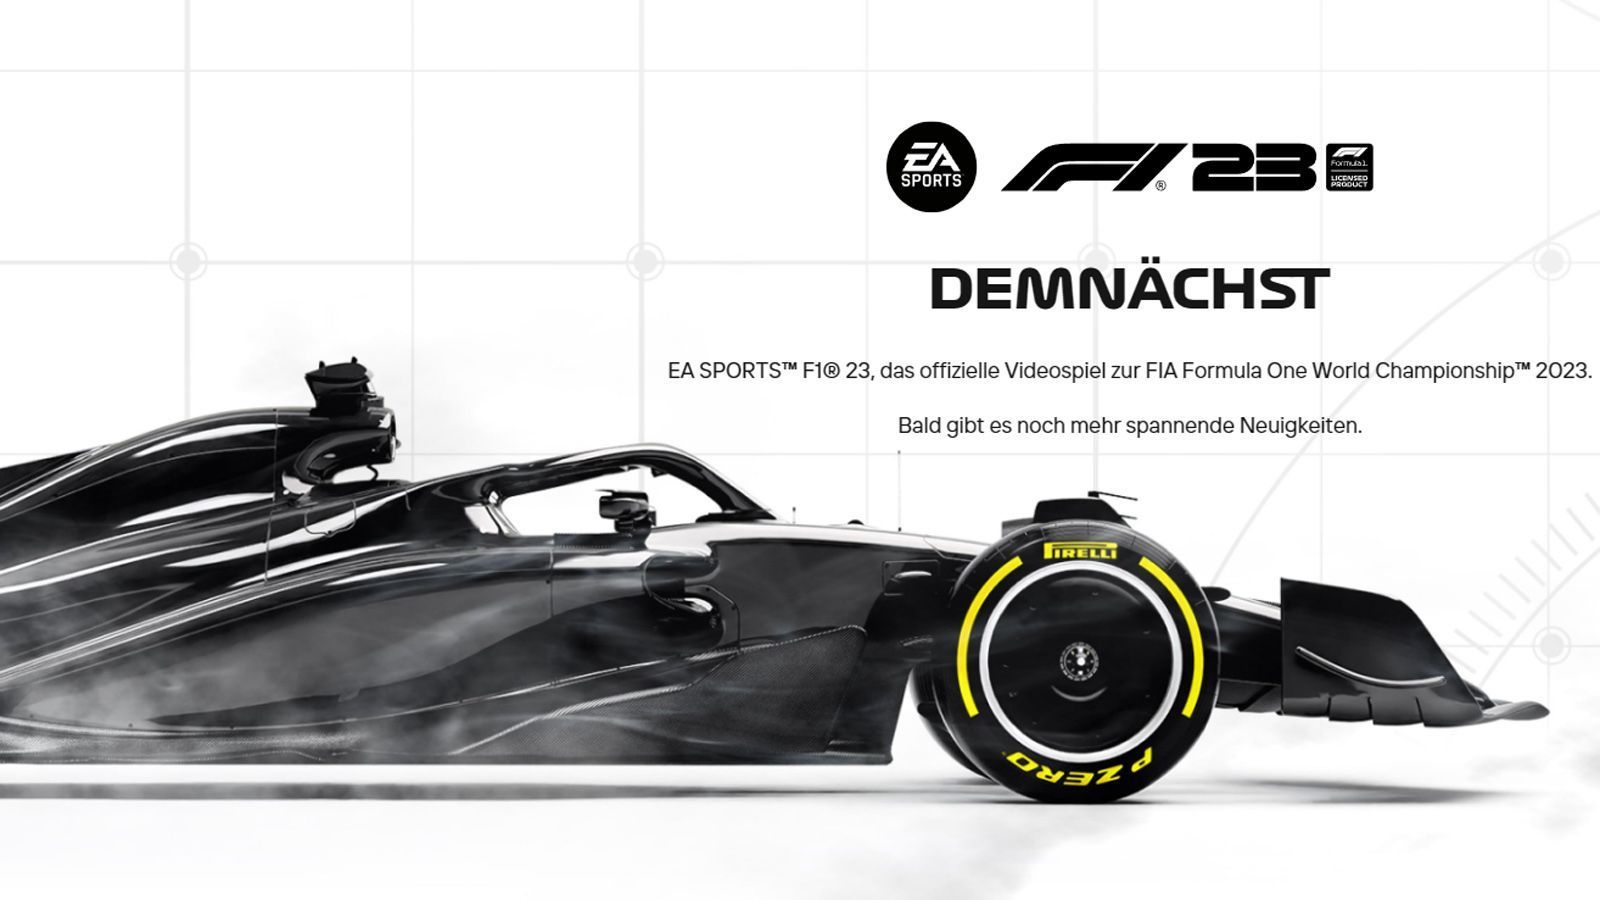 
                <strong>F1 2023</strong><br>
                Als Mick Schumacher können wir in "F1 2023" wohl nicht unterwegs sein, dafür aber als Nico Hülkenberg. Der neue Ableger des Formel-1-Spiels von Codemasters und EA-Sports dürfte wie üblich Ende Juni / Anfang Juli erscheinen. Das Spiel wurde bereits offiziell angekündigt, der Termin steht allerdings noch aus. Wünschenswert wäre eine Rückkehr des Story-Modus aus "F1 2021", außerdem eine Virtual-Reality-Funktionalität für die Konsolen. Bei "F1 2022" gibt es diese lediglich für die PC-Version. Der Entwickler hat eine VR-Funktionalität für die Playstation bislang weder bestätigt noch ausgeschlossen.
              